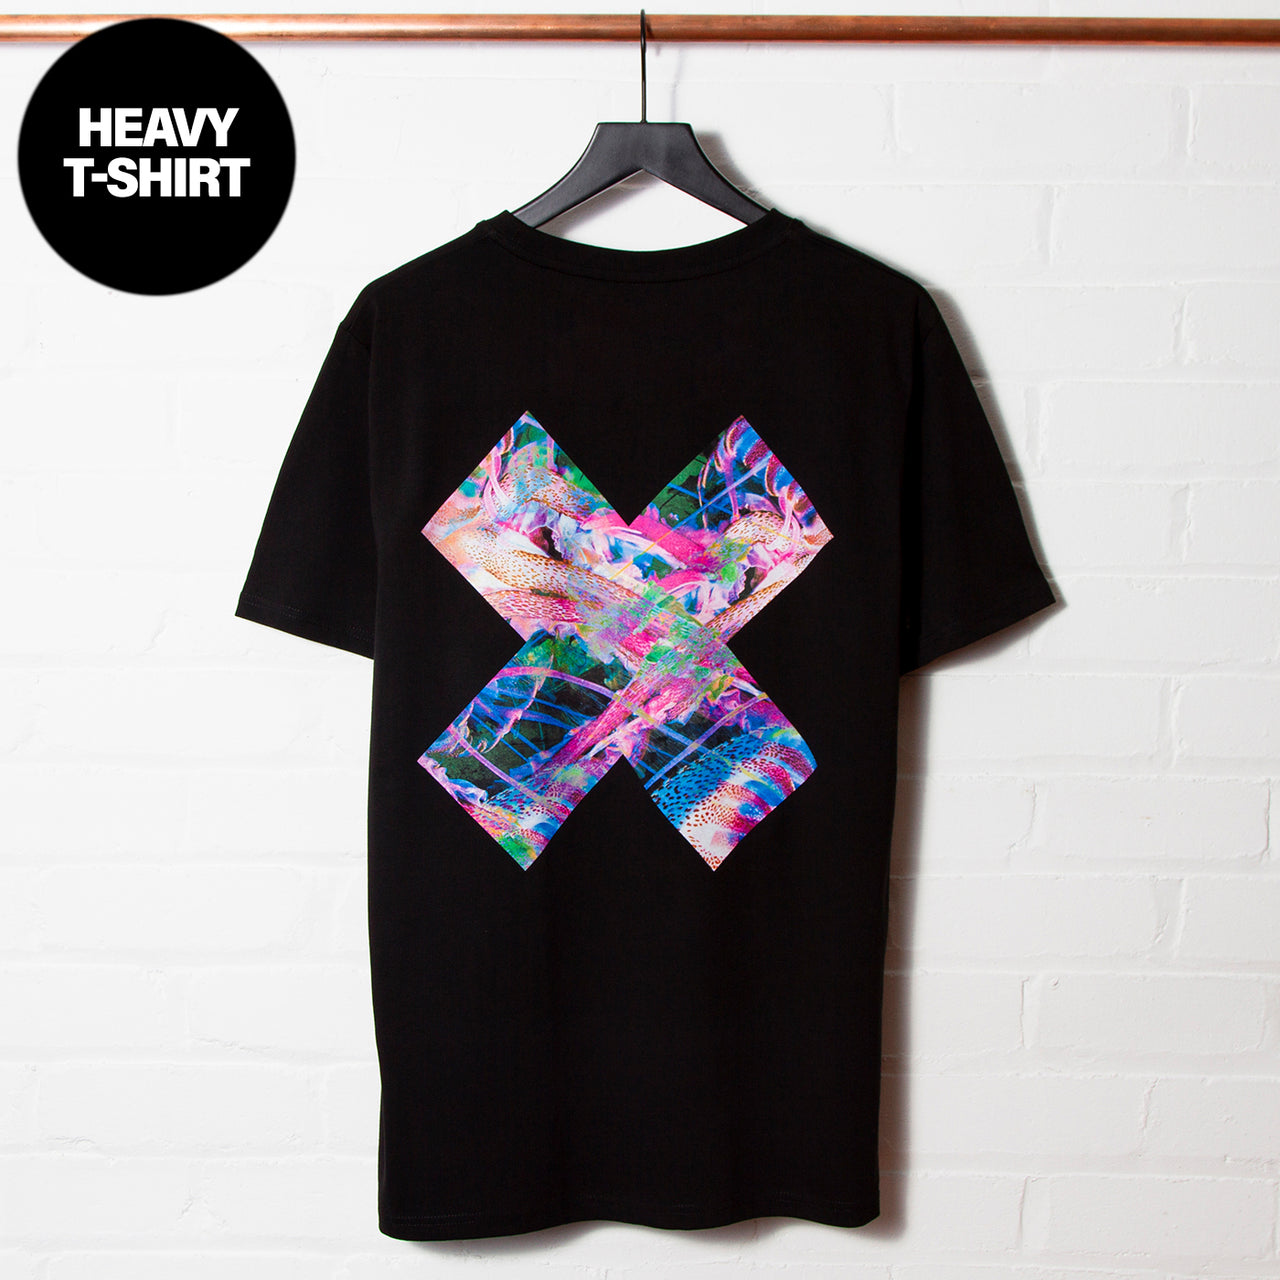 Suburb X Imprint - Tshirt - Black